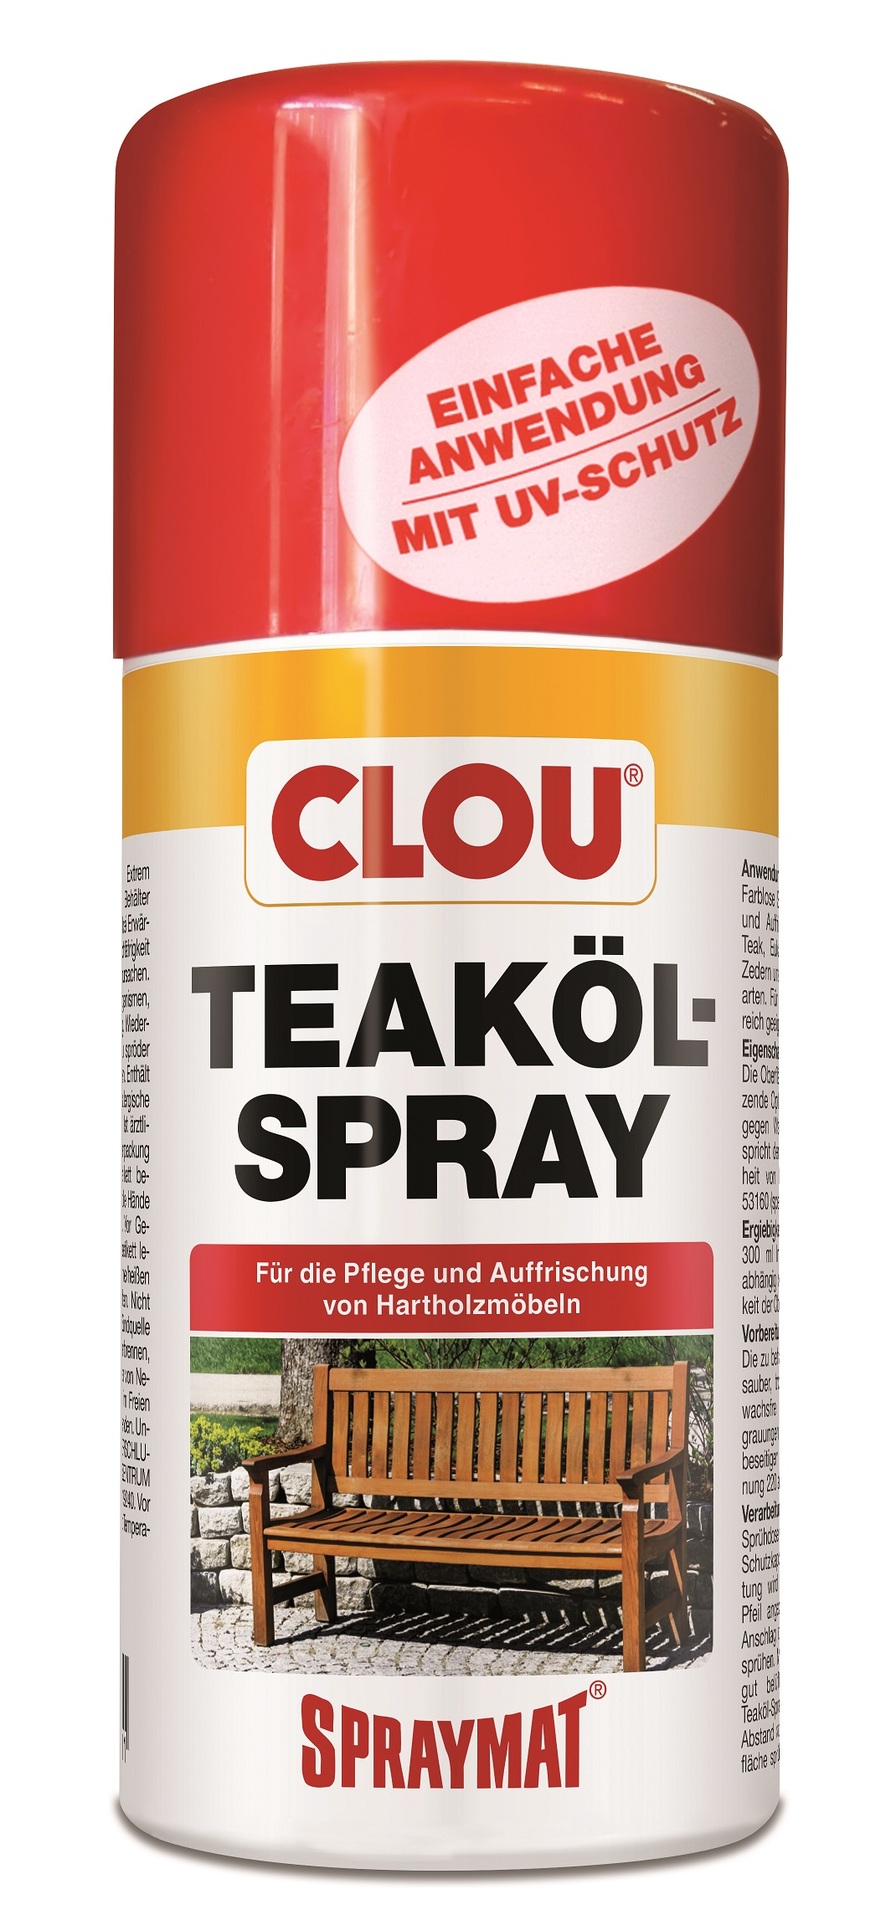 Teaköl-Spray 300ml